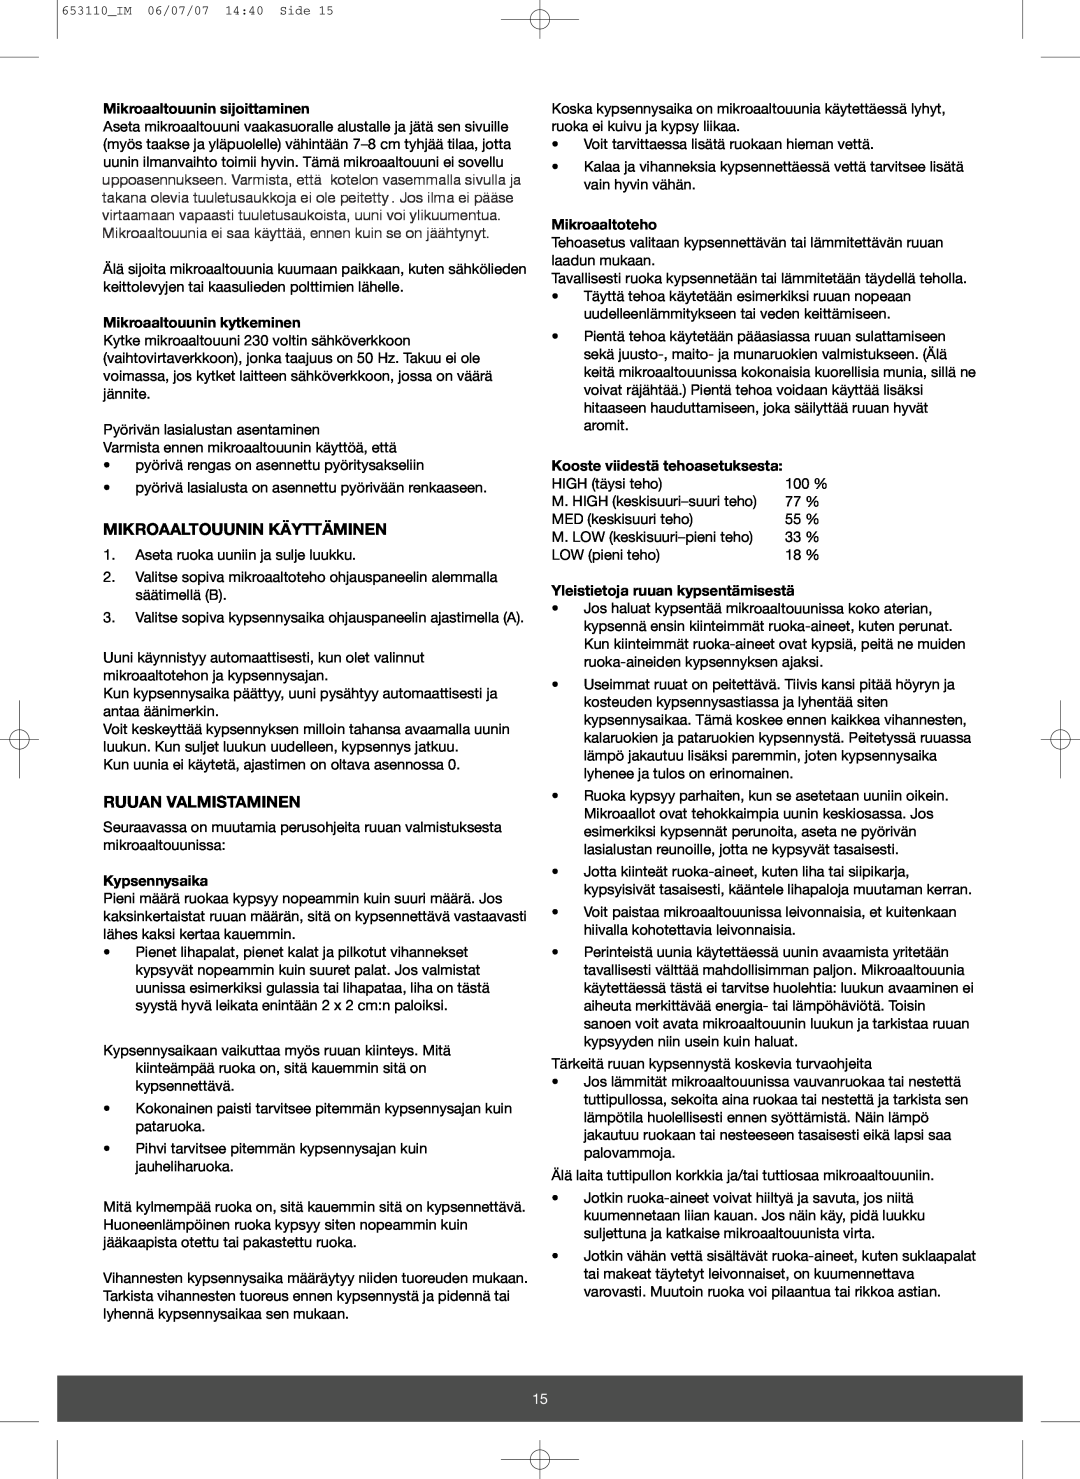 Melissa 653-111 manual Mikroaaltouunin Käyttäminen, Ruuan Valmistaminen, Mikroaaltouunin sijoittaminen, Kypsennysaika 